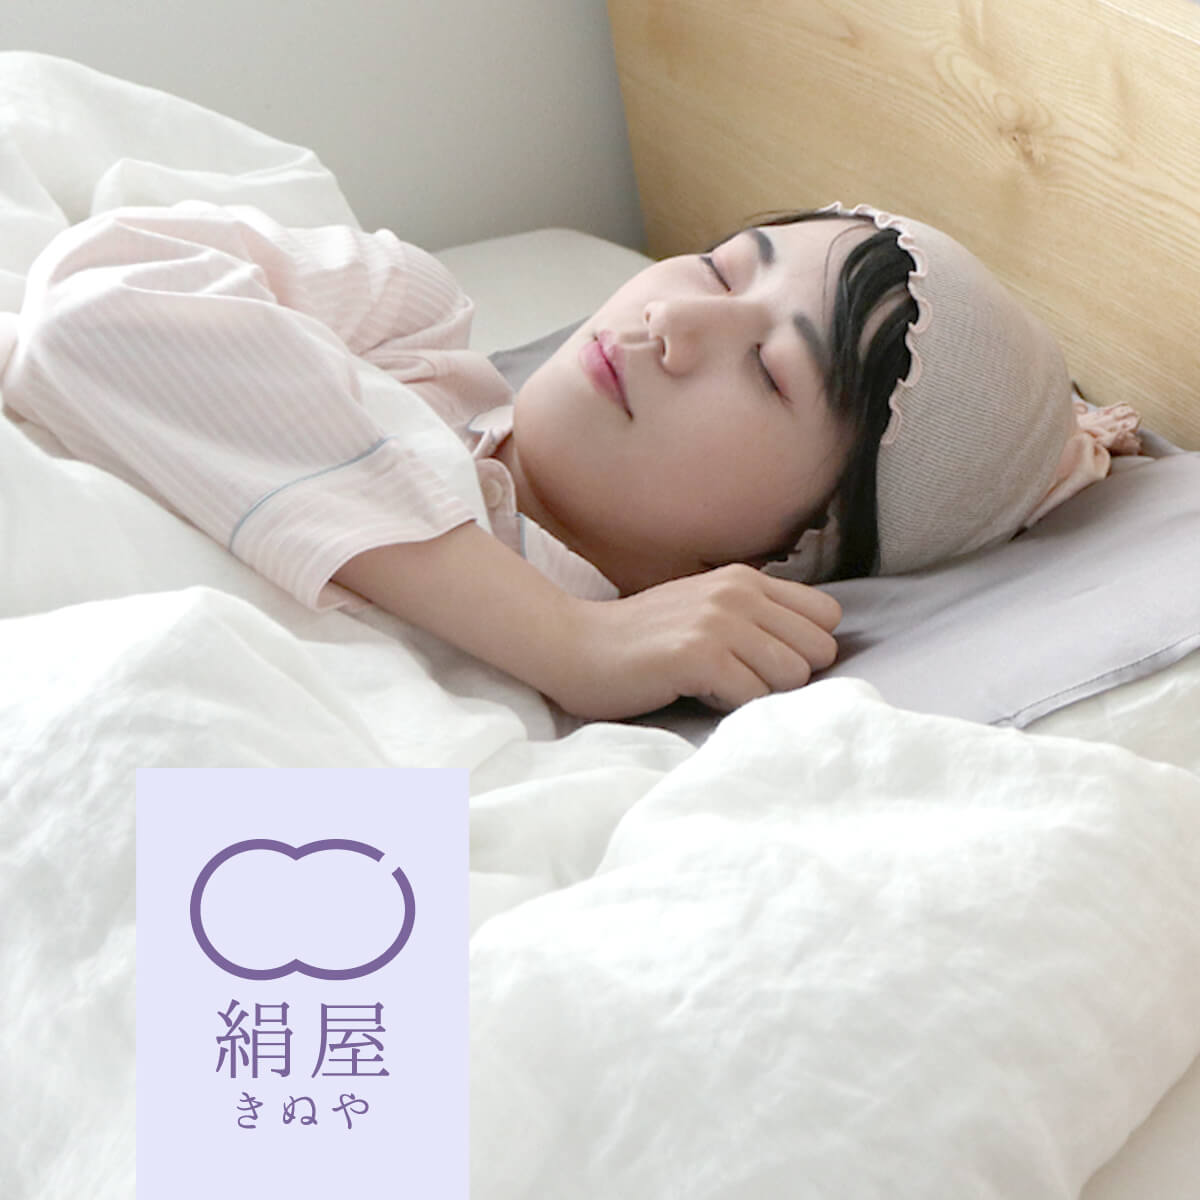 絹屋 シルク ナイトキャップ ふわふわタイプ シルクキャップ シルク100% ロング ロングヘア レディース 女性用 睡眠 就寝用 日本製